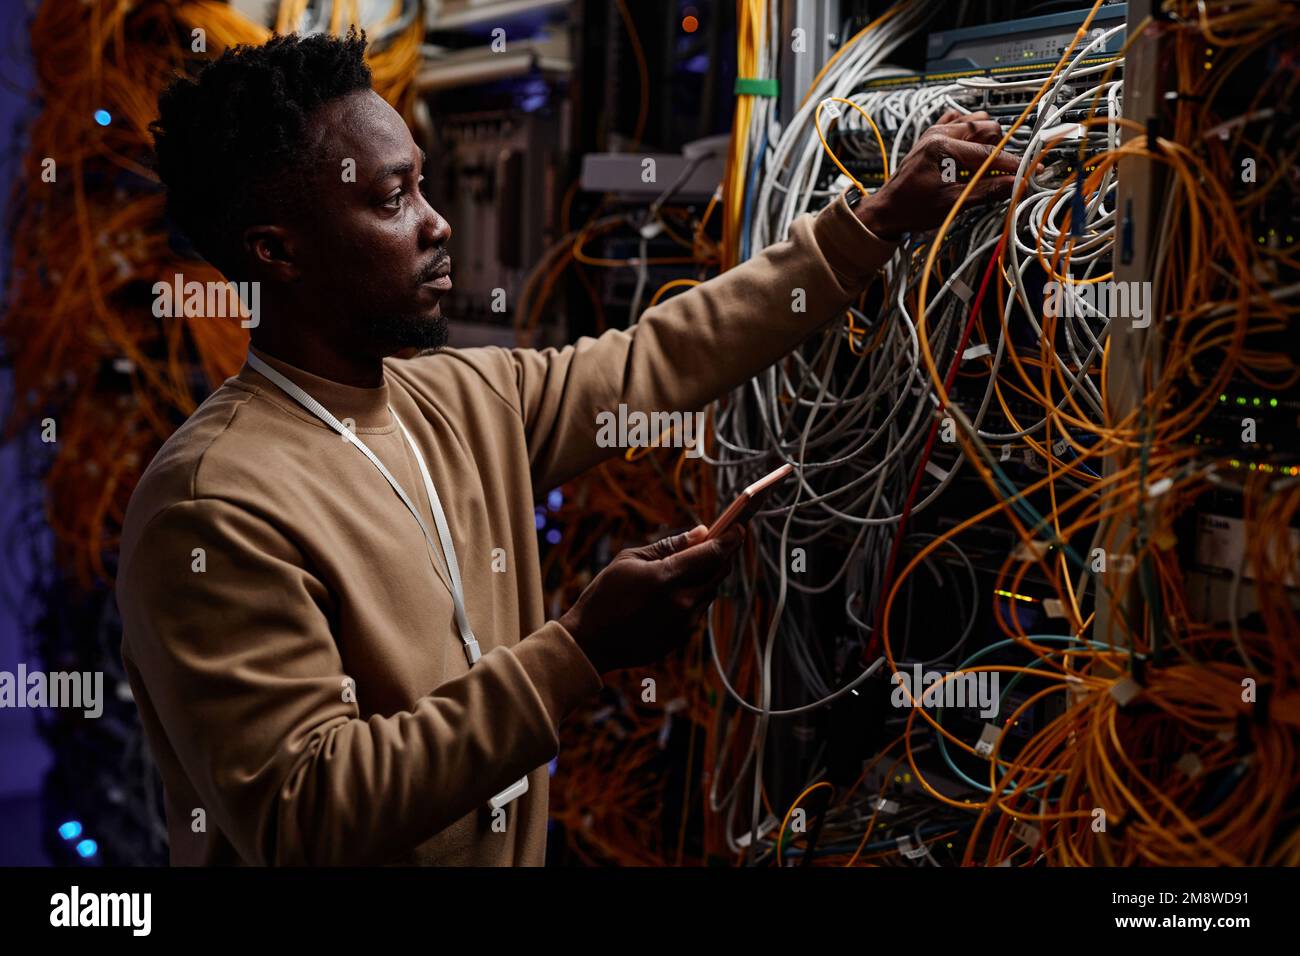 Vue latérale d'un jeune homme noir en tant qu'administrateur système qui fixe le serveur avec des câbles et des fils désordonnés Banque D'Images